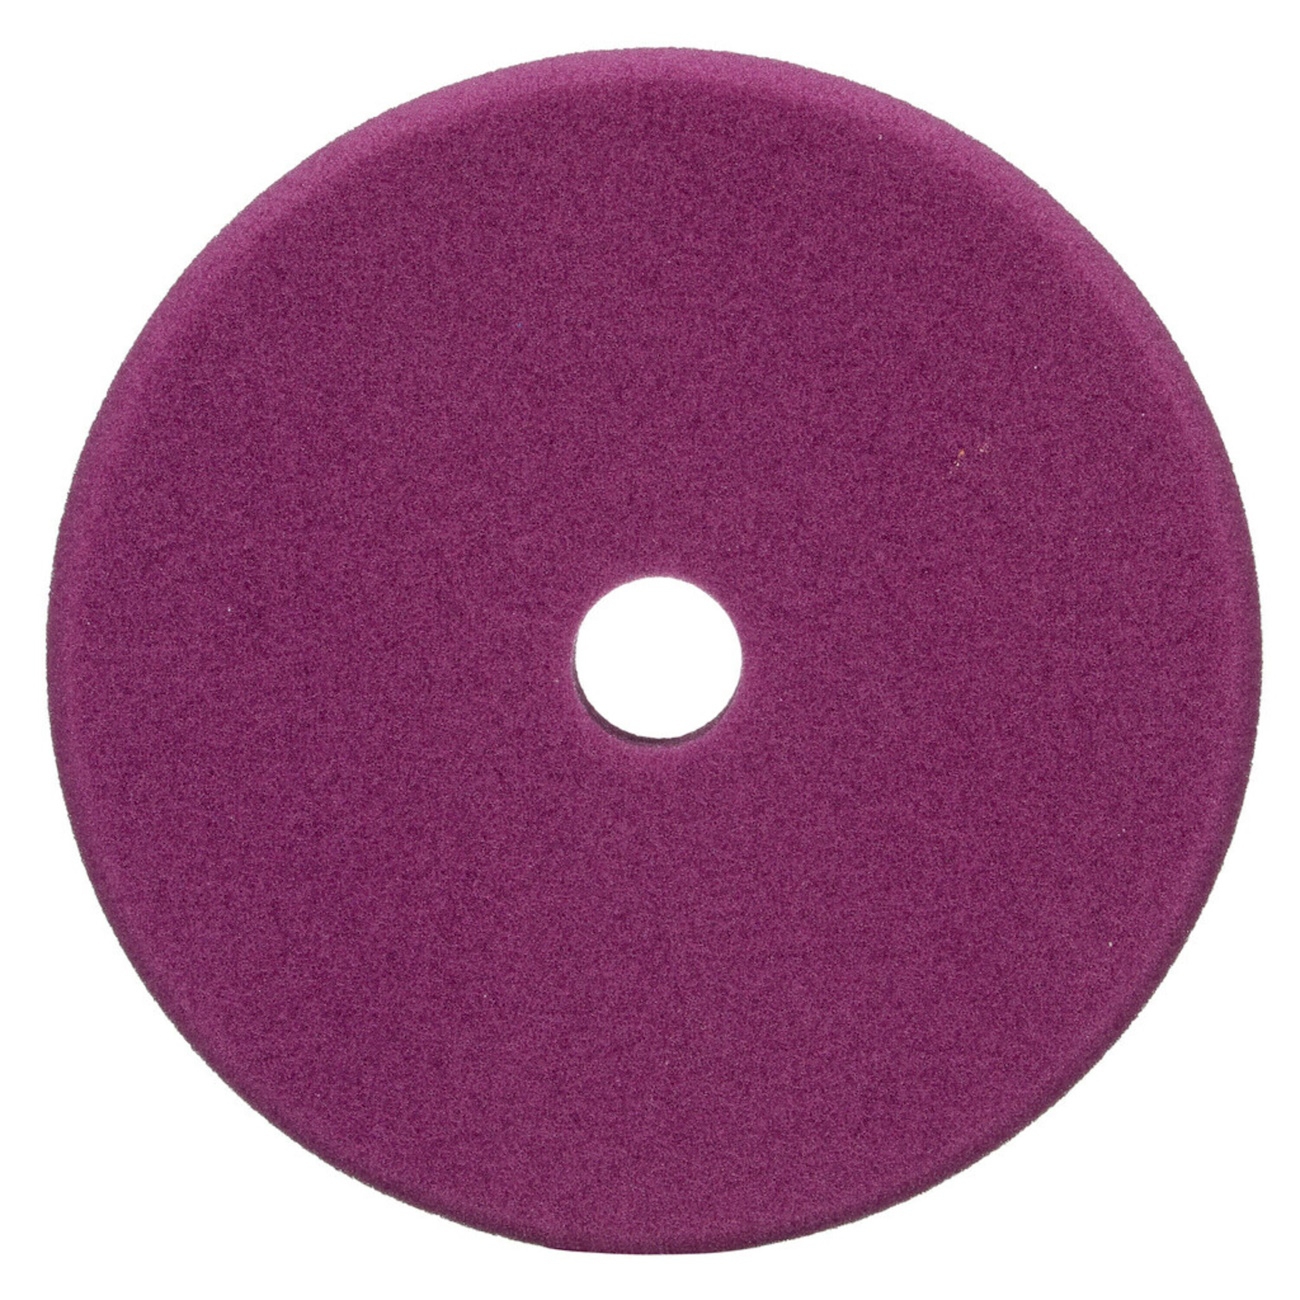 3M Perfect-it almohadilla pulidora de espuma fina para pulidora excéntrica, violeta, 130 mm, 34123 (paquete = 2 piezas)